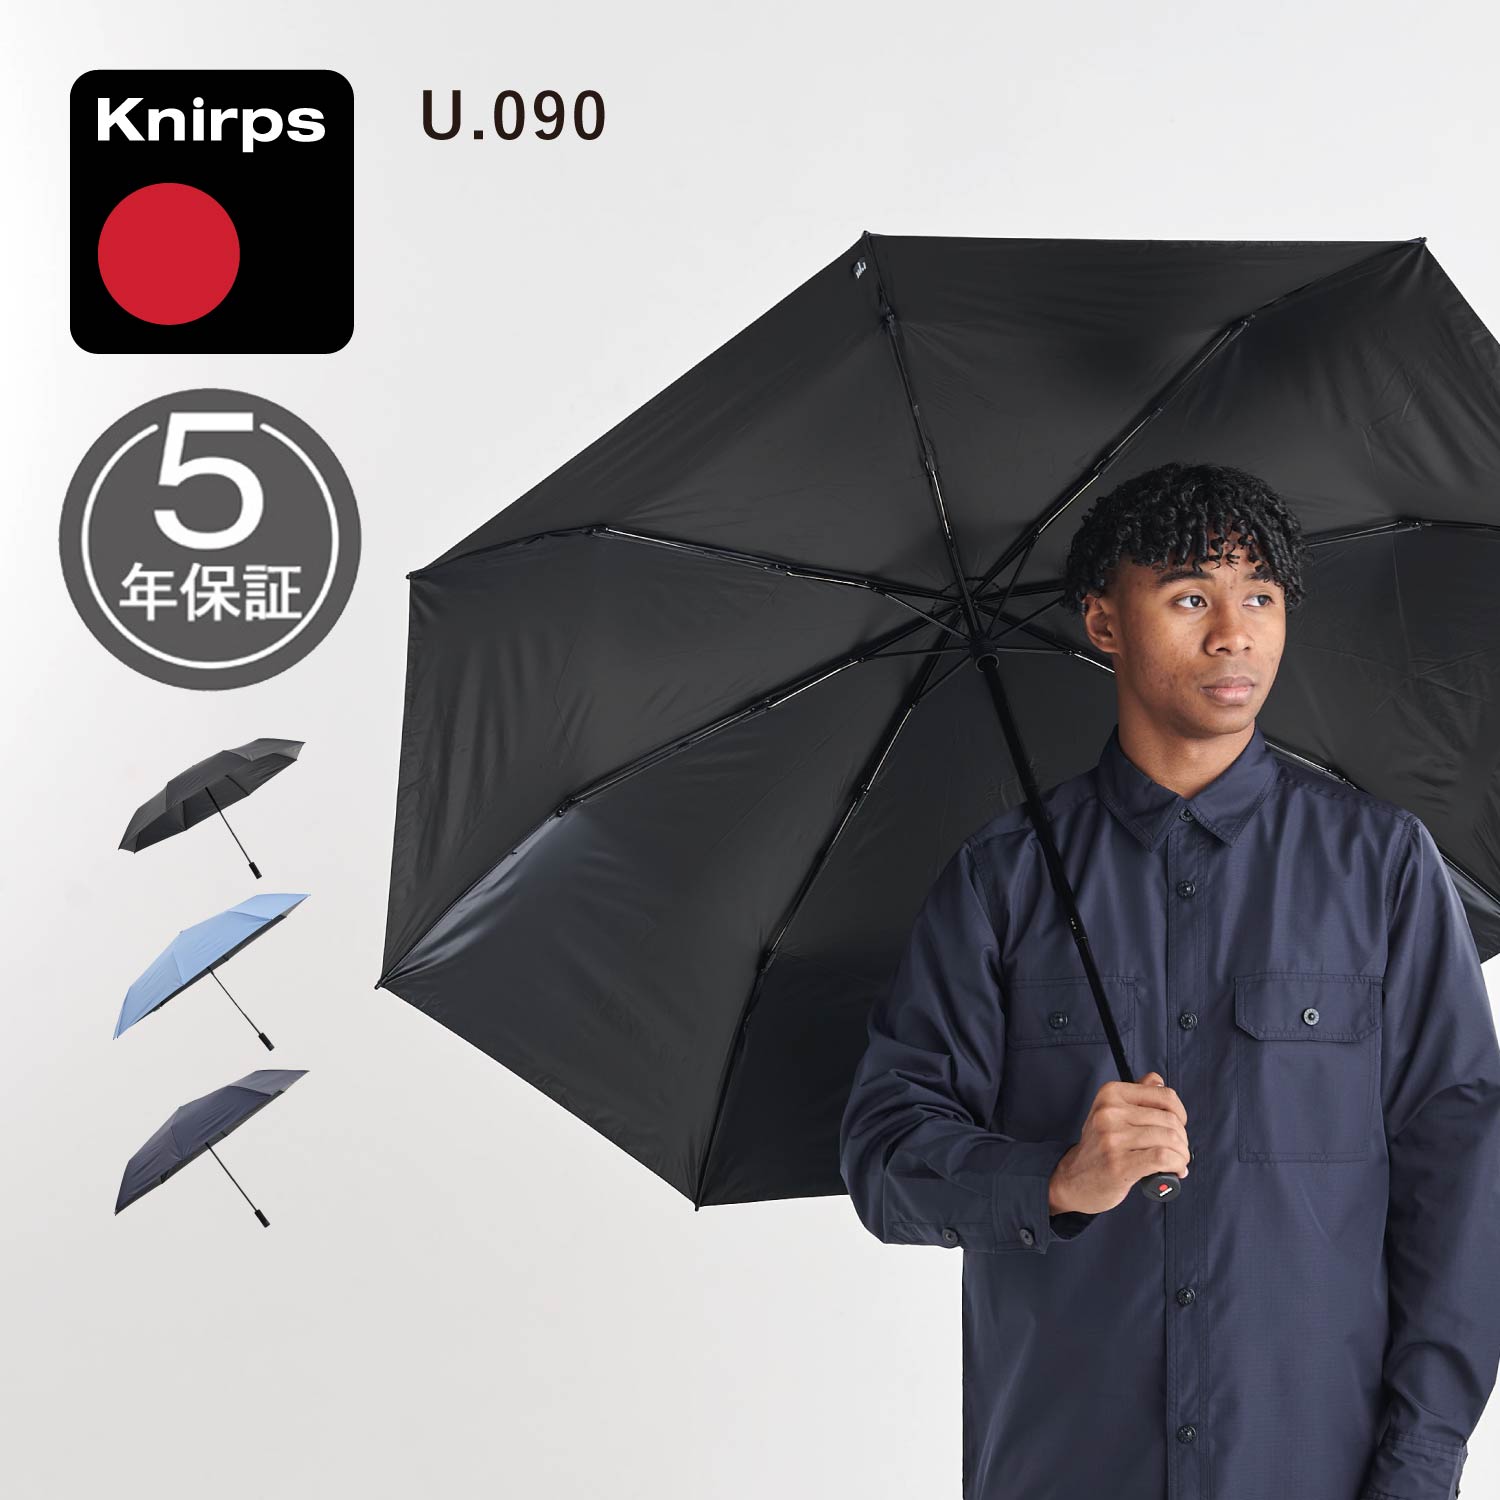 クニルプス 傘 メンズ クニルプス Knirps 折りたたみ傘 日傘 メンズ レディース 軽量 大きい 128cm 晴雨兼用 UVカット 遮光率99.9% ブラック ネイビー 黒 KNU090 母の日